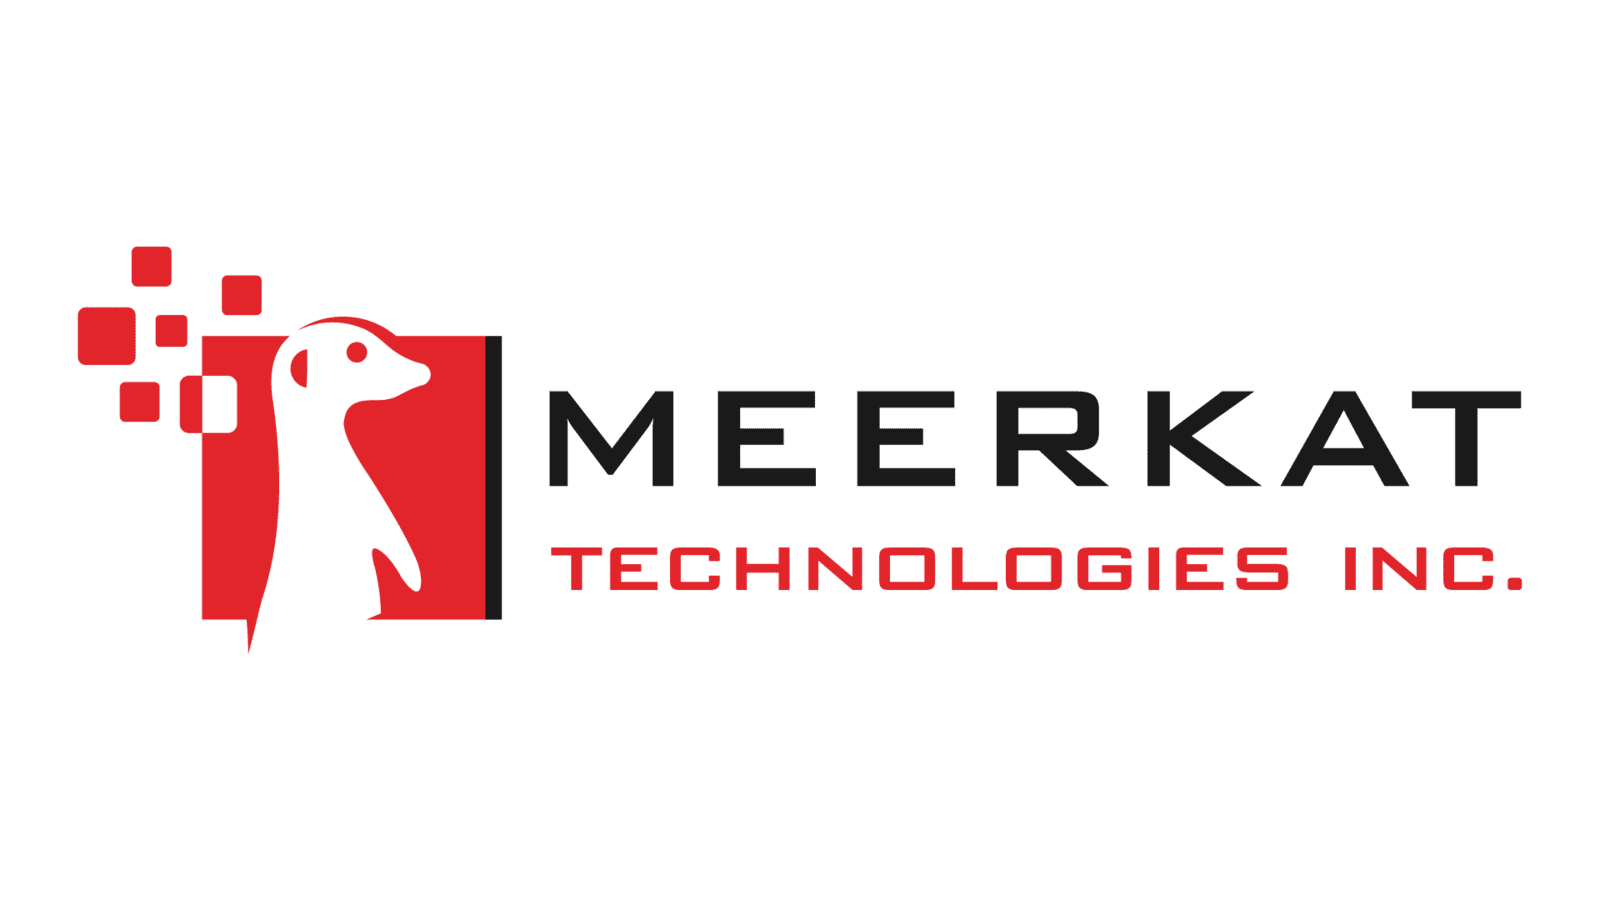 Meerkat Technologies Inc